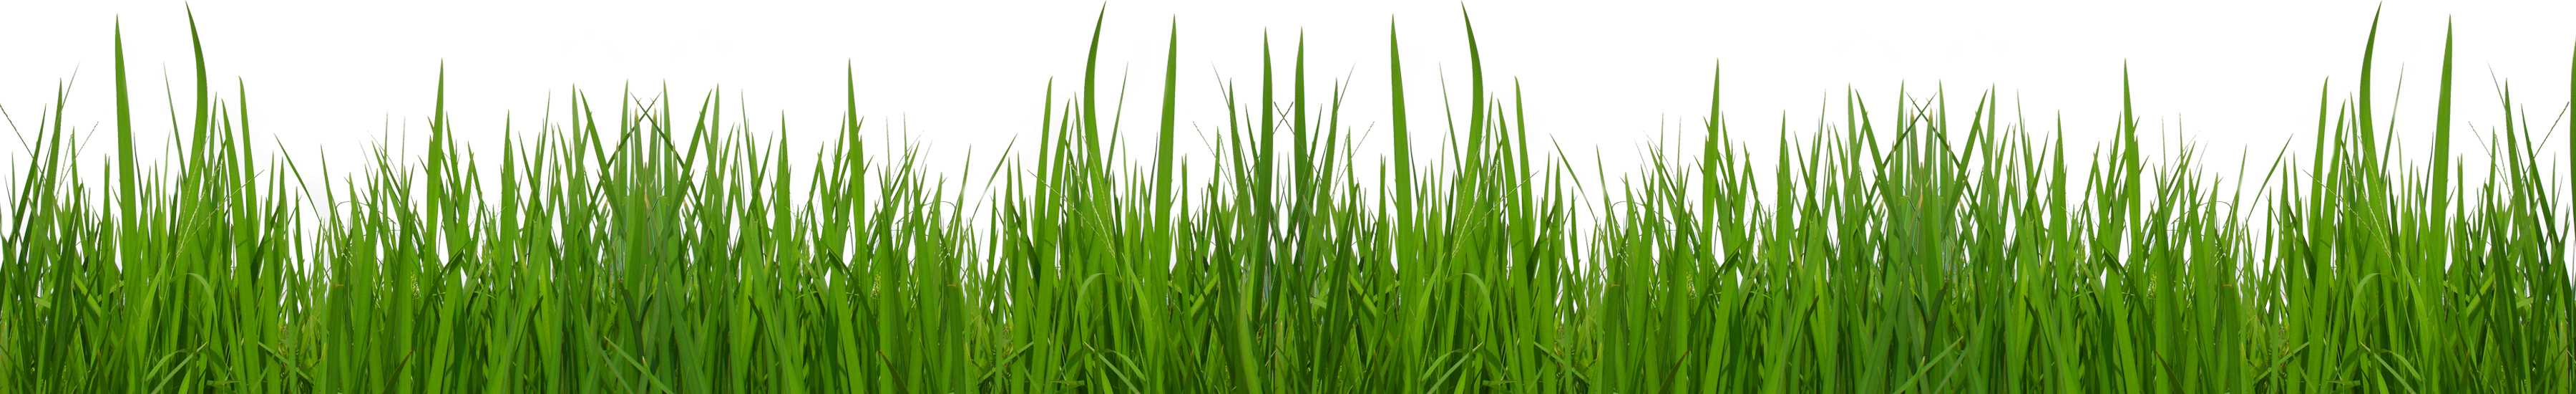 Free grass clip art pictures - Grass Clip Art